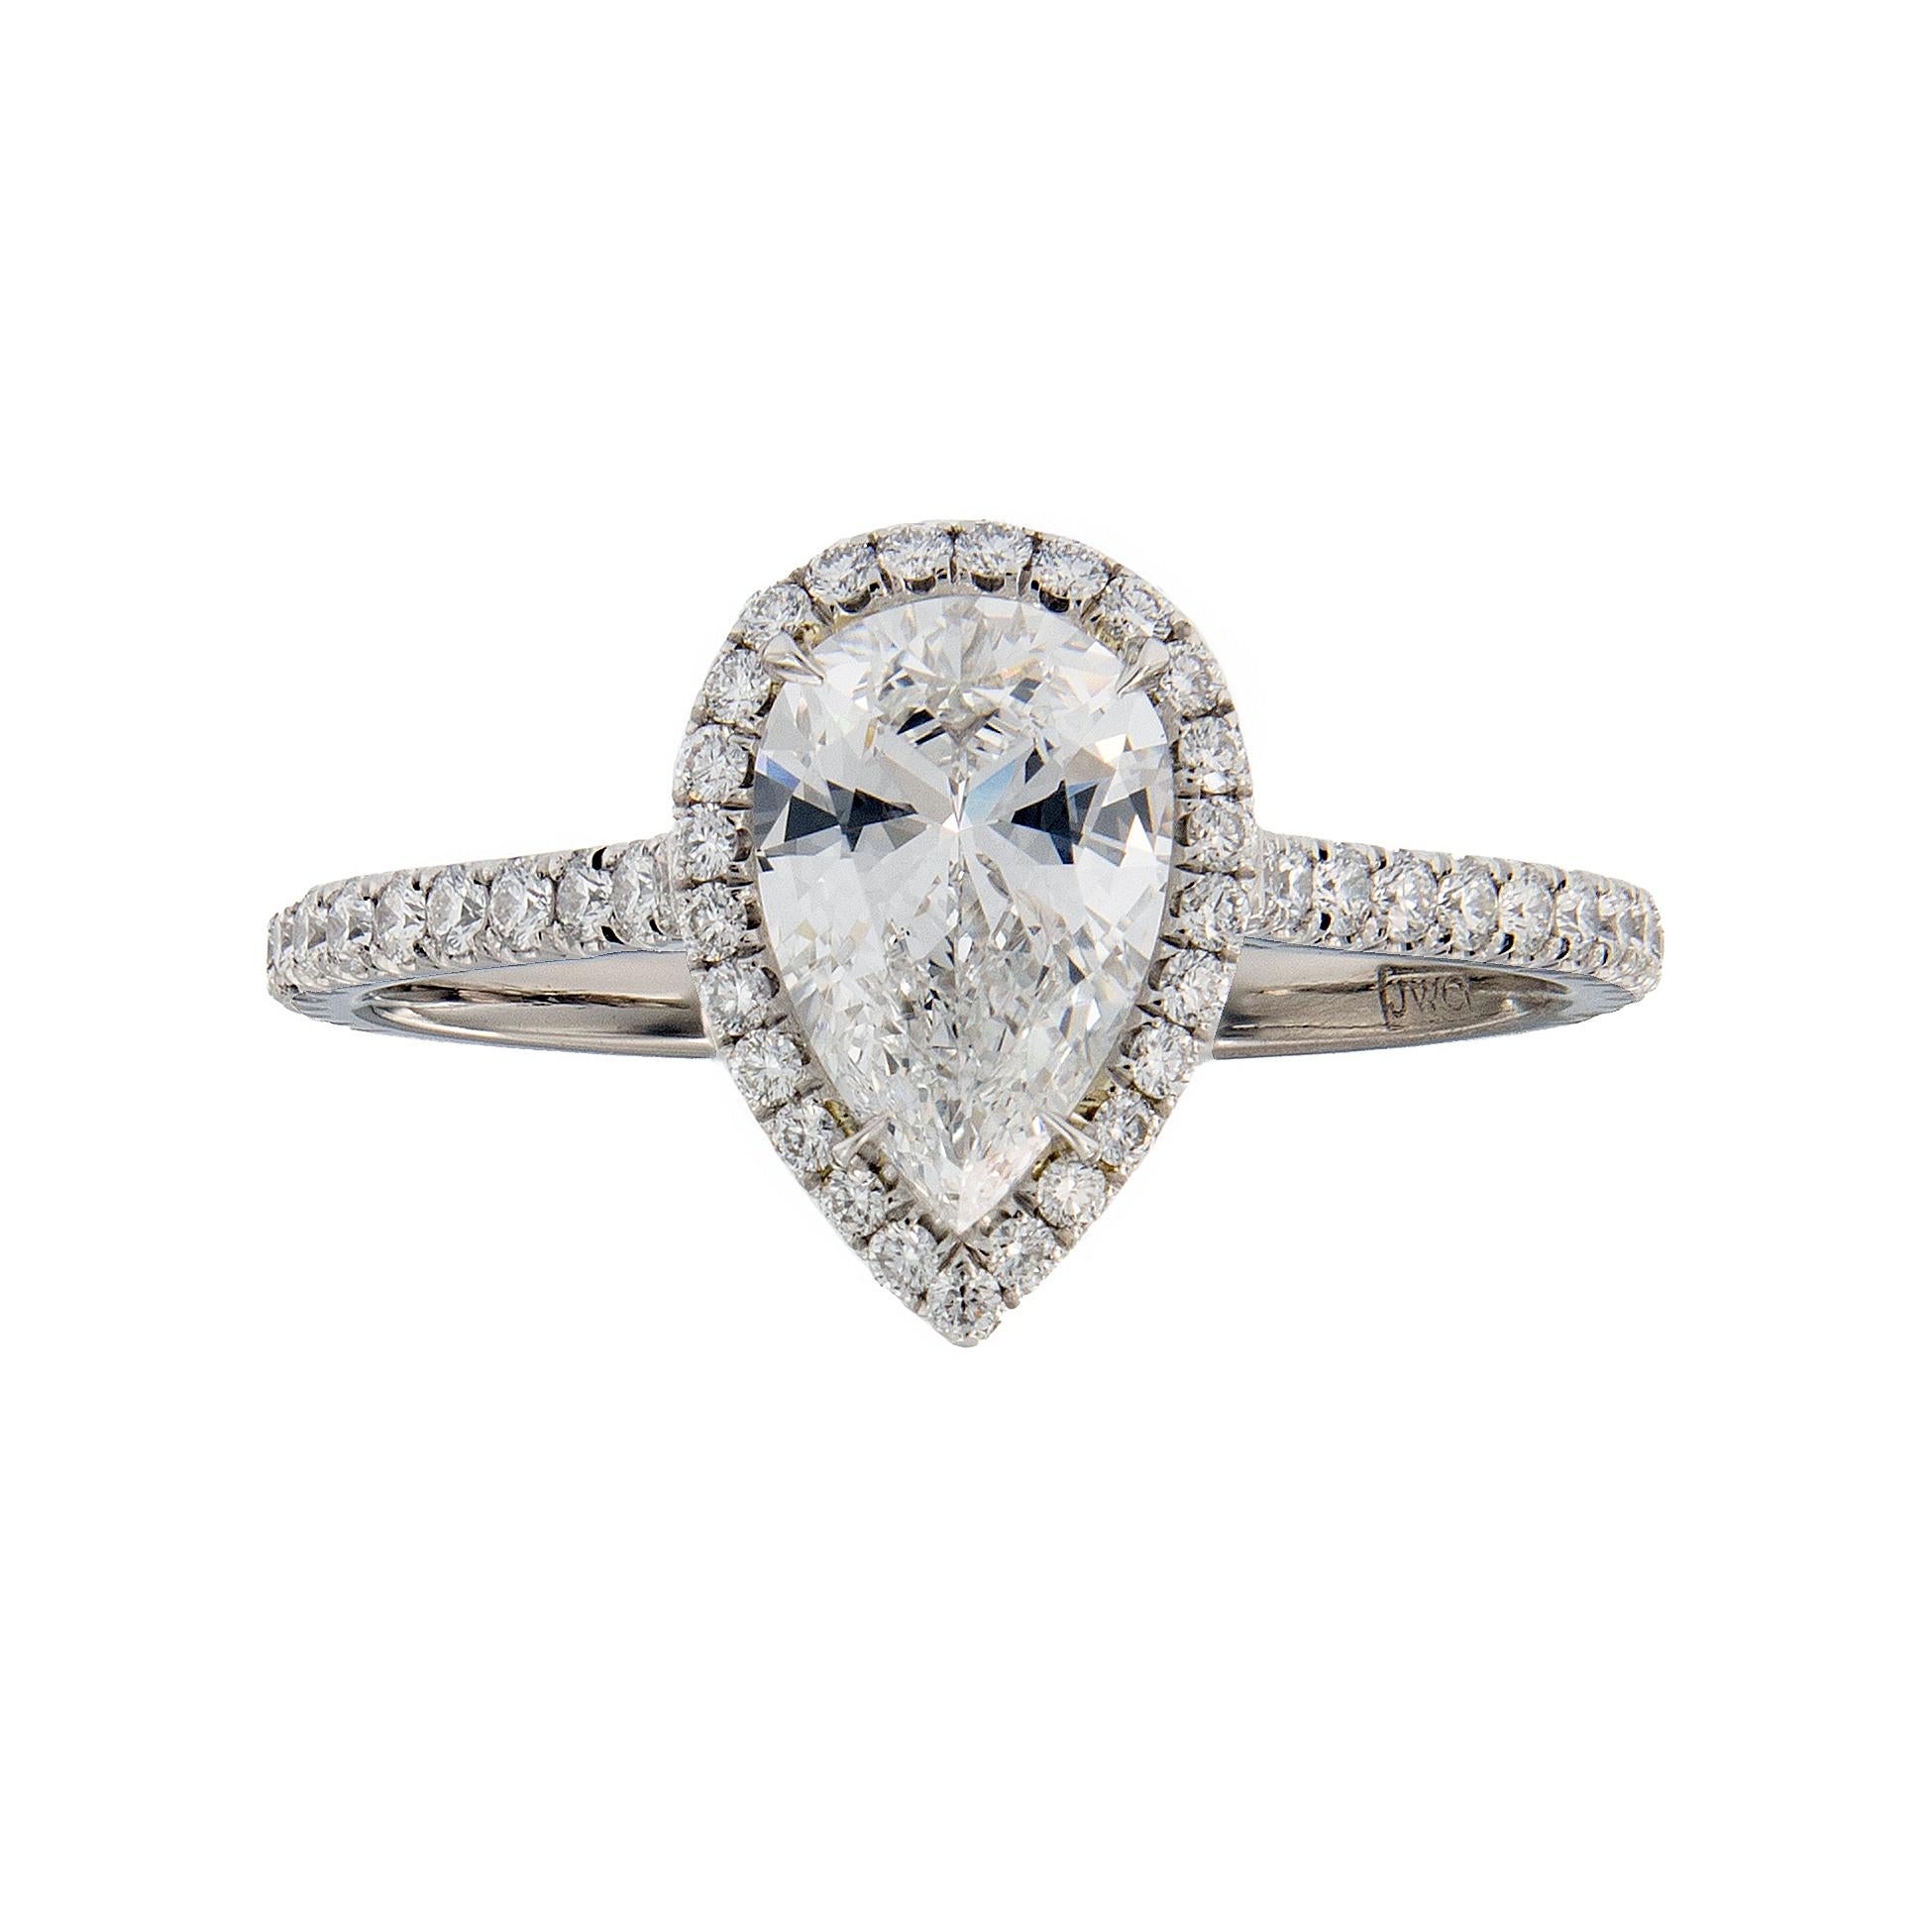 Atemberaubender Verlobungsring, handgefertigt in Platin. Ring mit einem birnenförmigen Diamanten von 0,88 Karat (Farbe D, Reinheit VS1) in der Mitte, umrahmt von einem schillernden Halo aus französischen Diamanten in Pflastertechnik. Das mit